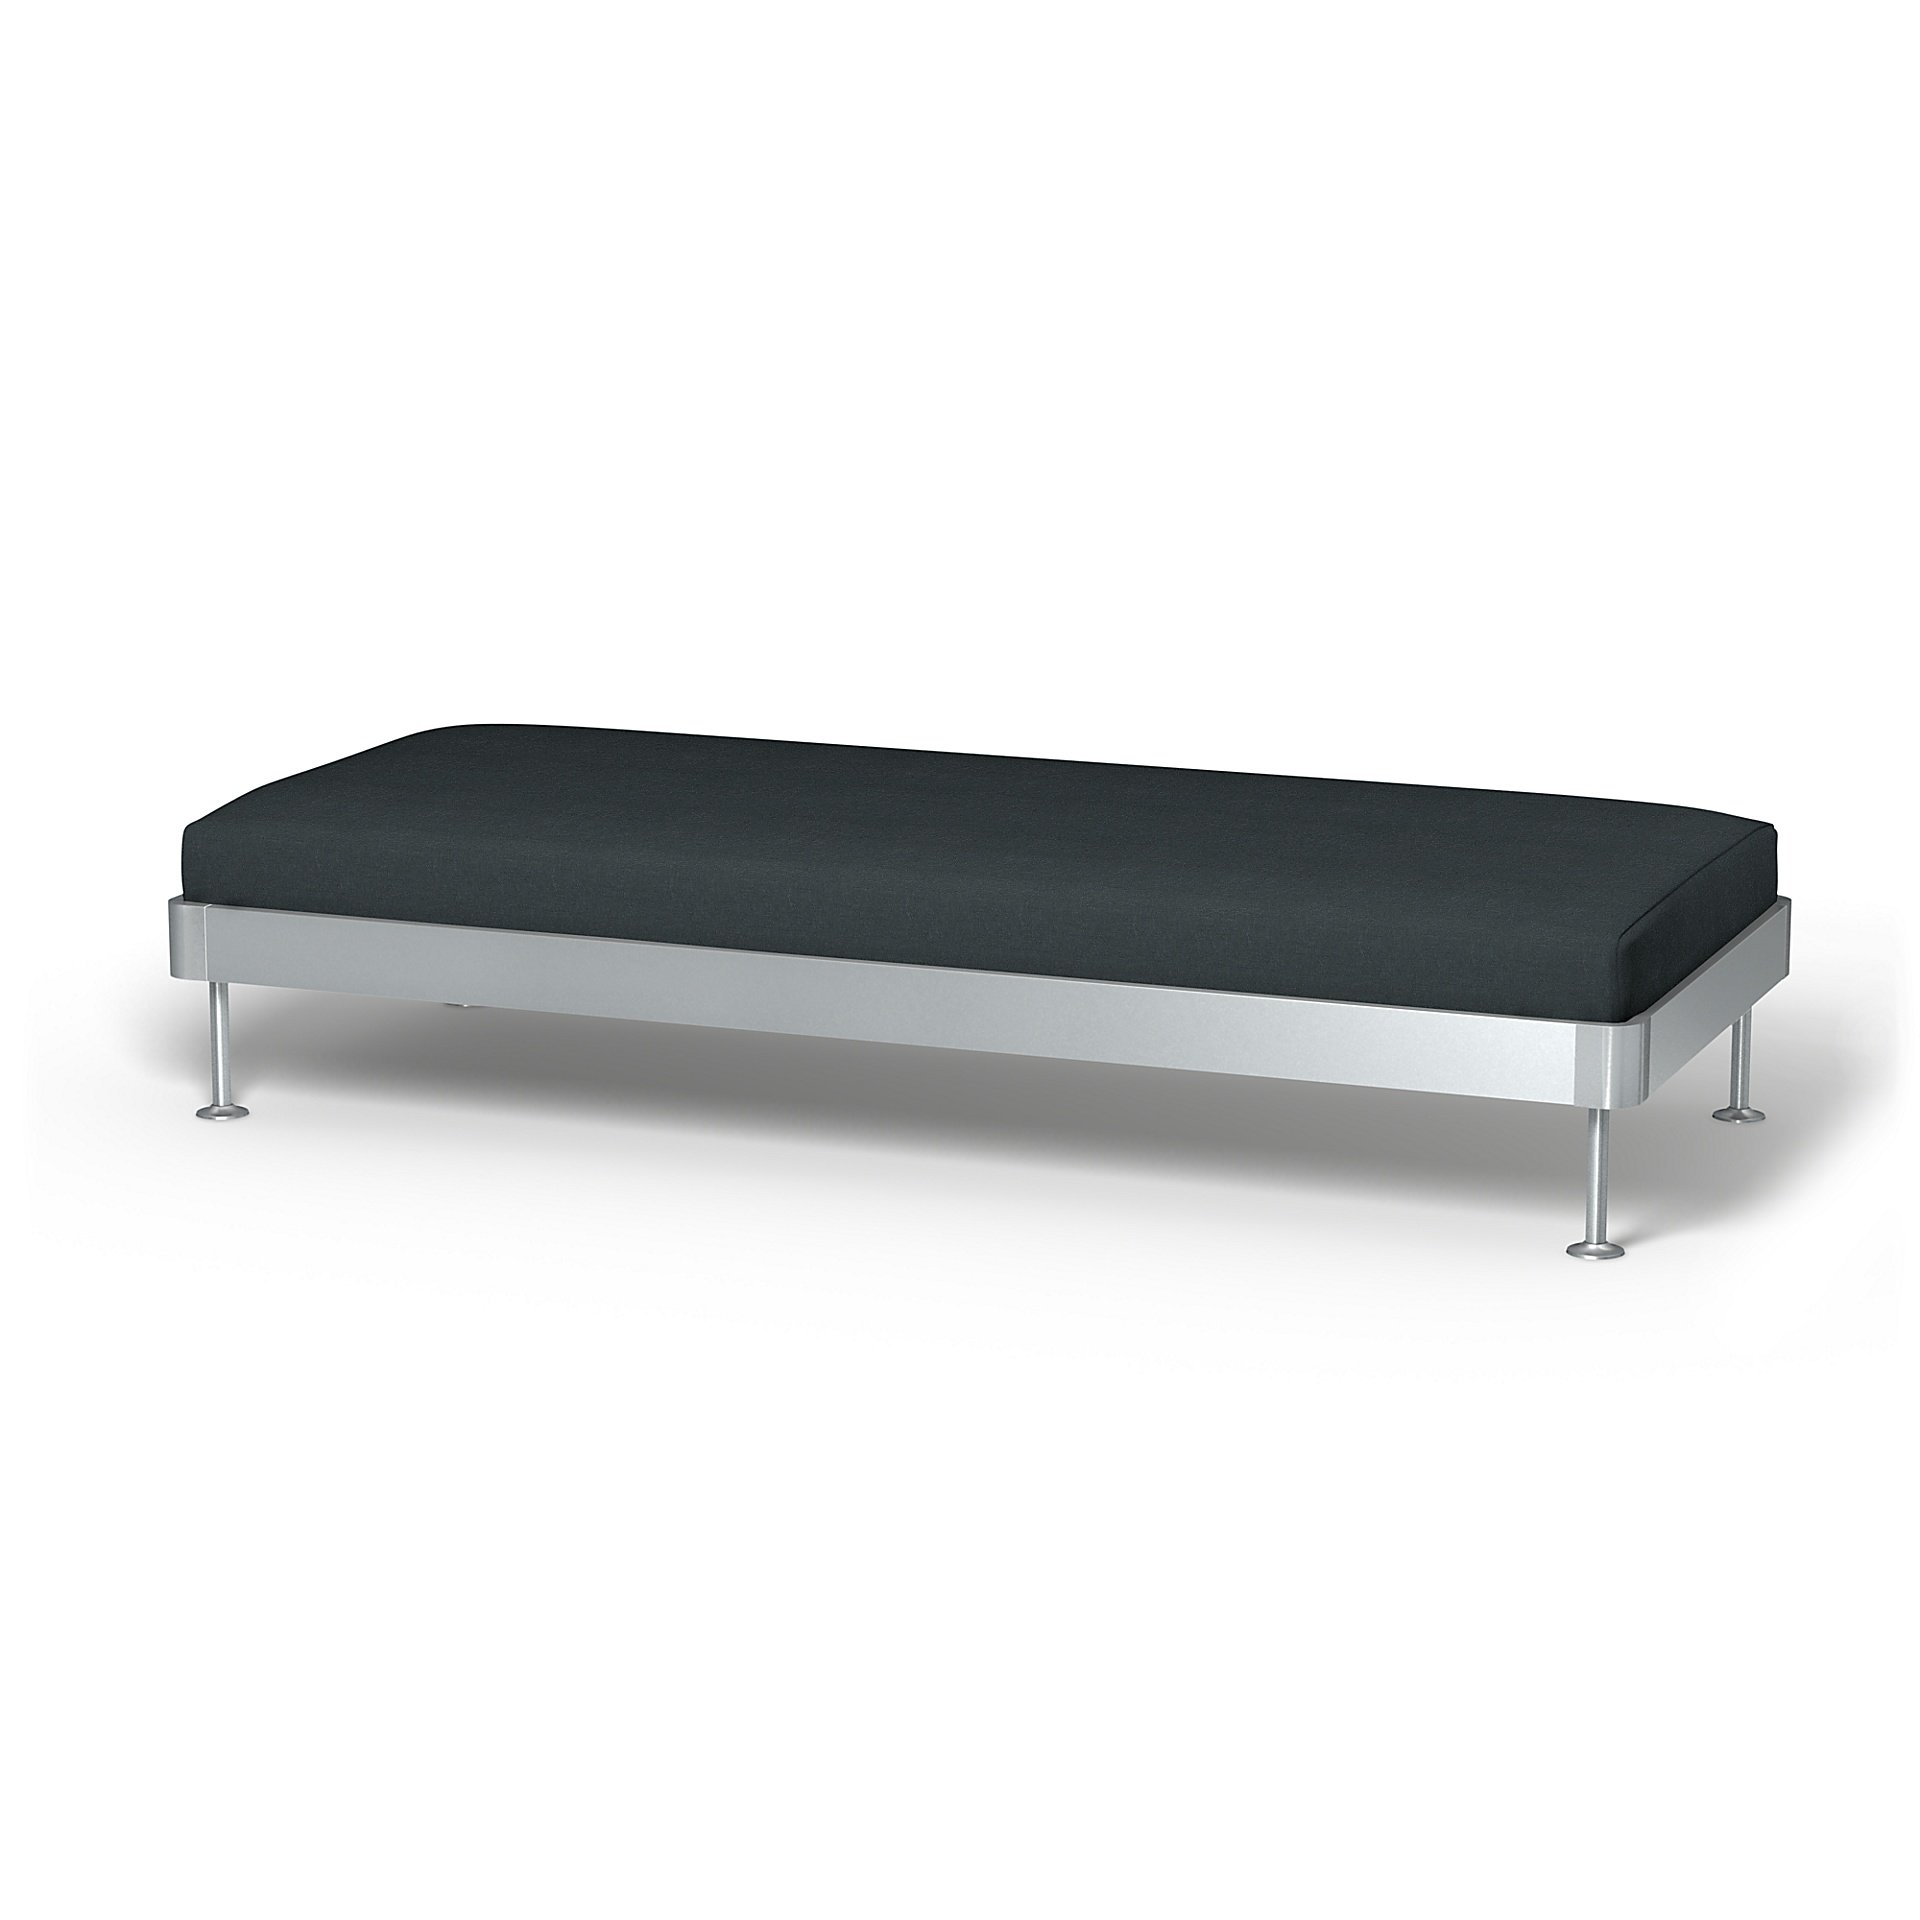 IKEA - Delaktig 3 Seat Platform Cover, Graphite Grey, Linen - Bemz